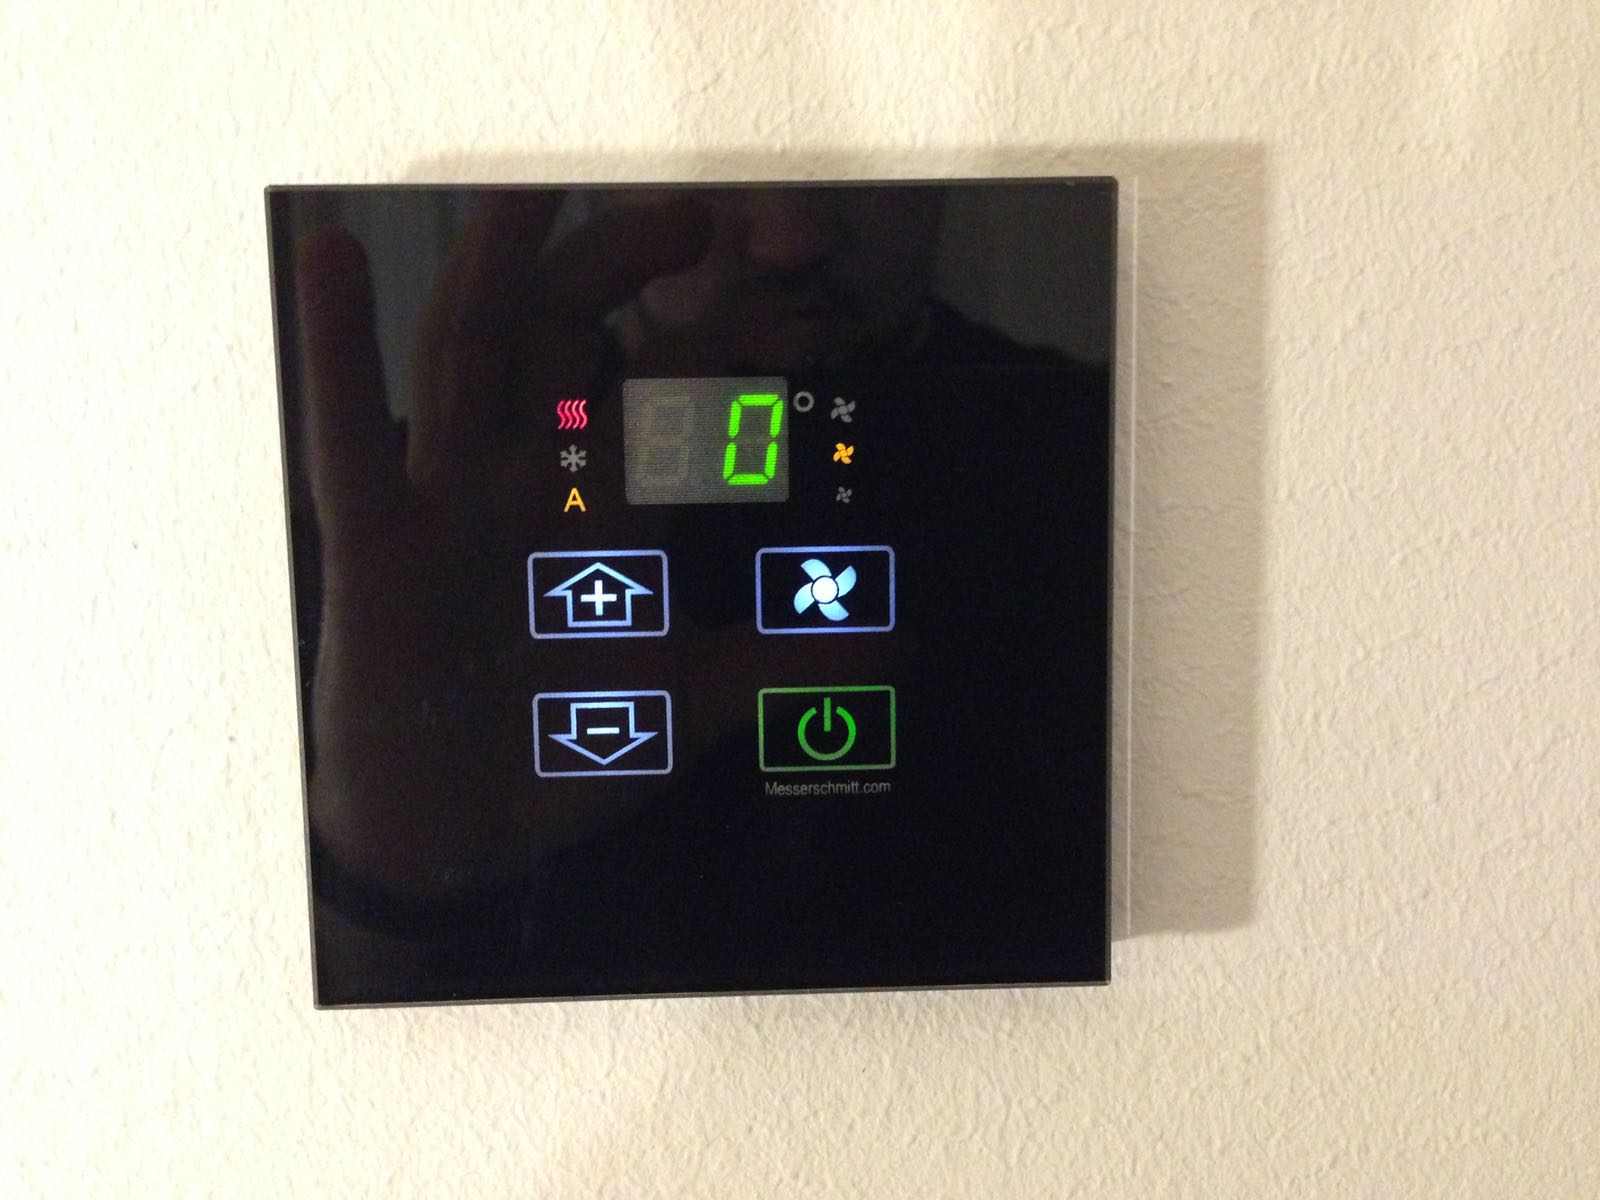 Am digitalen Thermostat lässt sich die Temperatur leicht einstellen